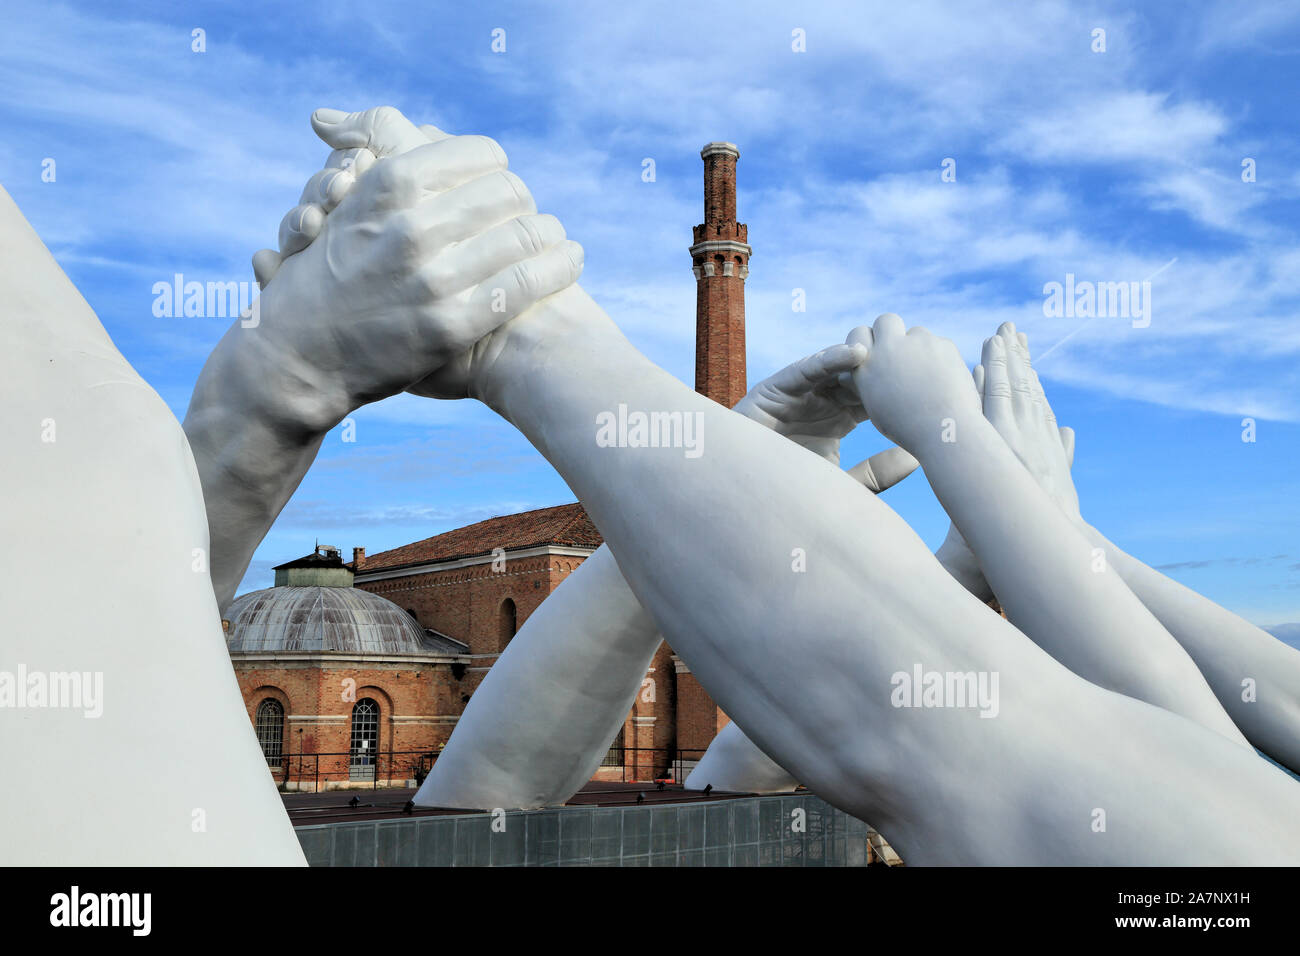 Art Biennale Venedig 2019. Riesige Hände Skulptur 'Brücken bauen' von Lorenzo Quinn. Ausstellung im Arsenale, Castello, Venedig. Stockfoto